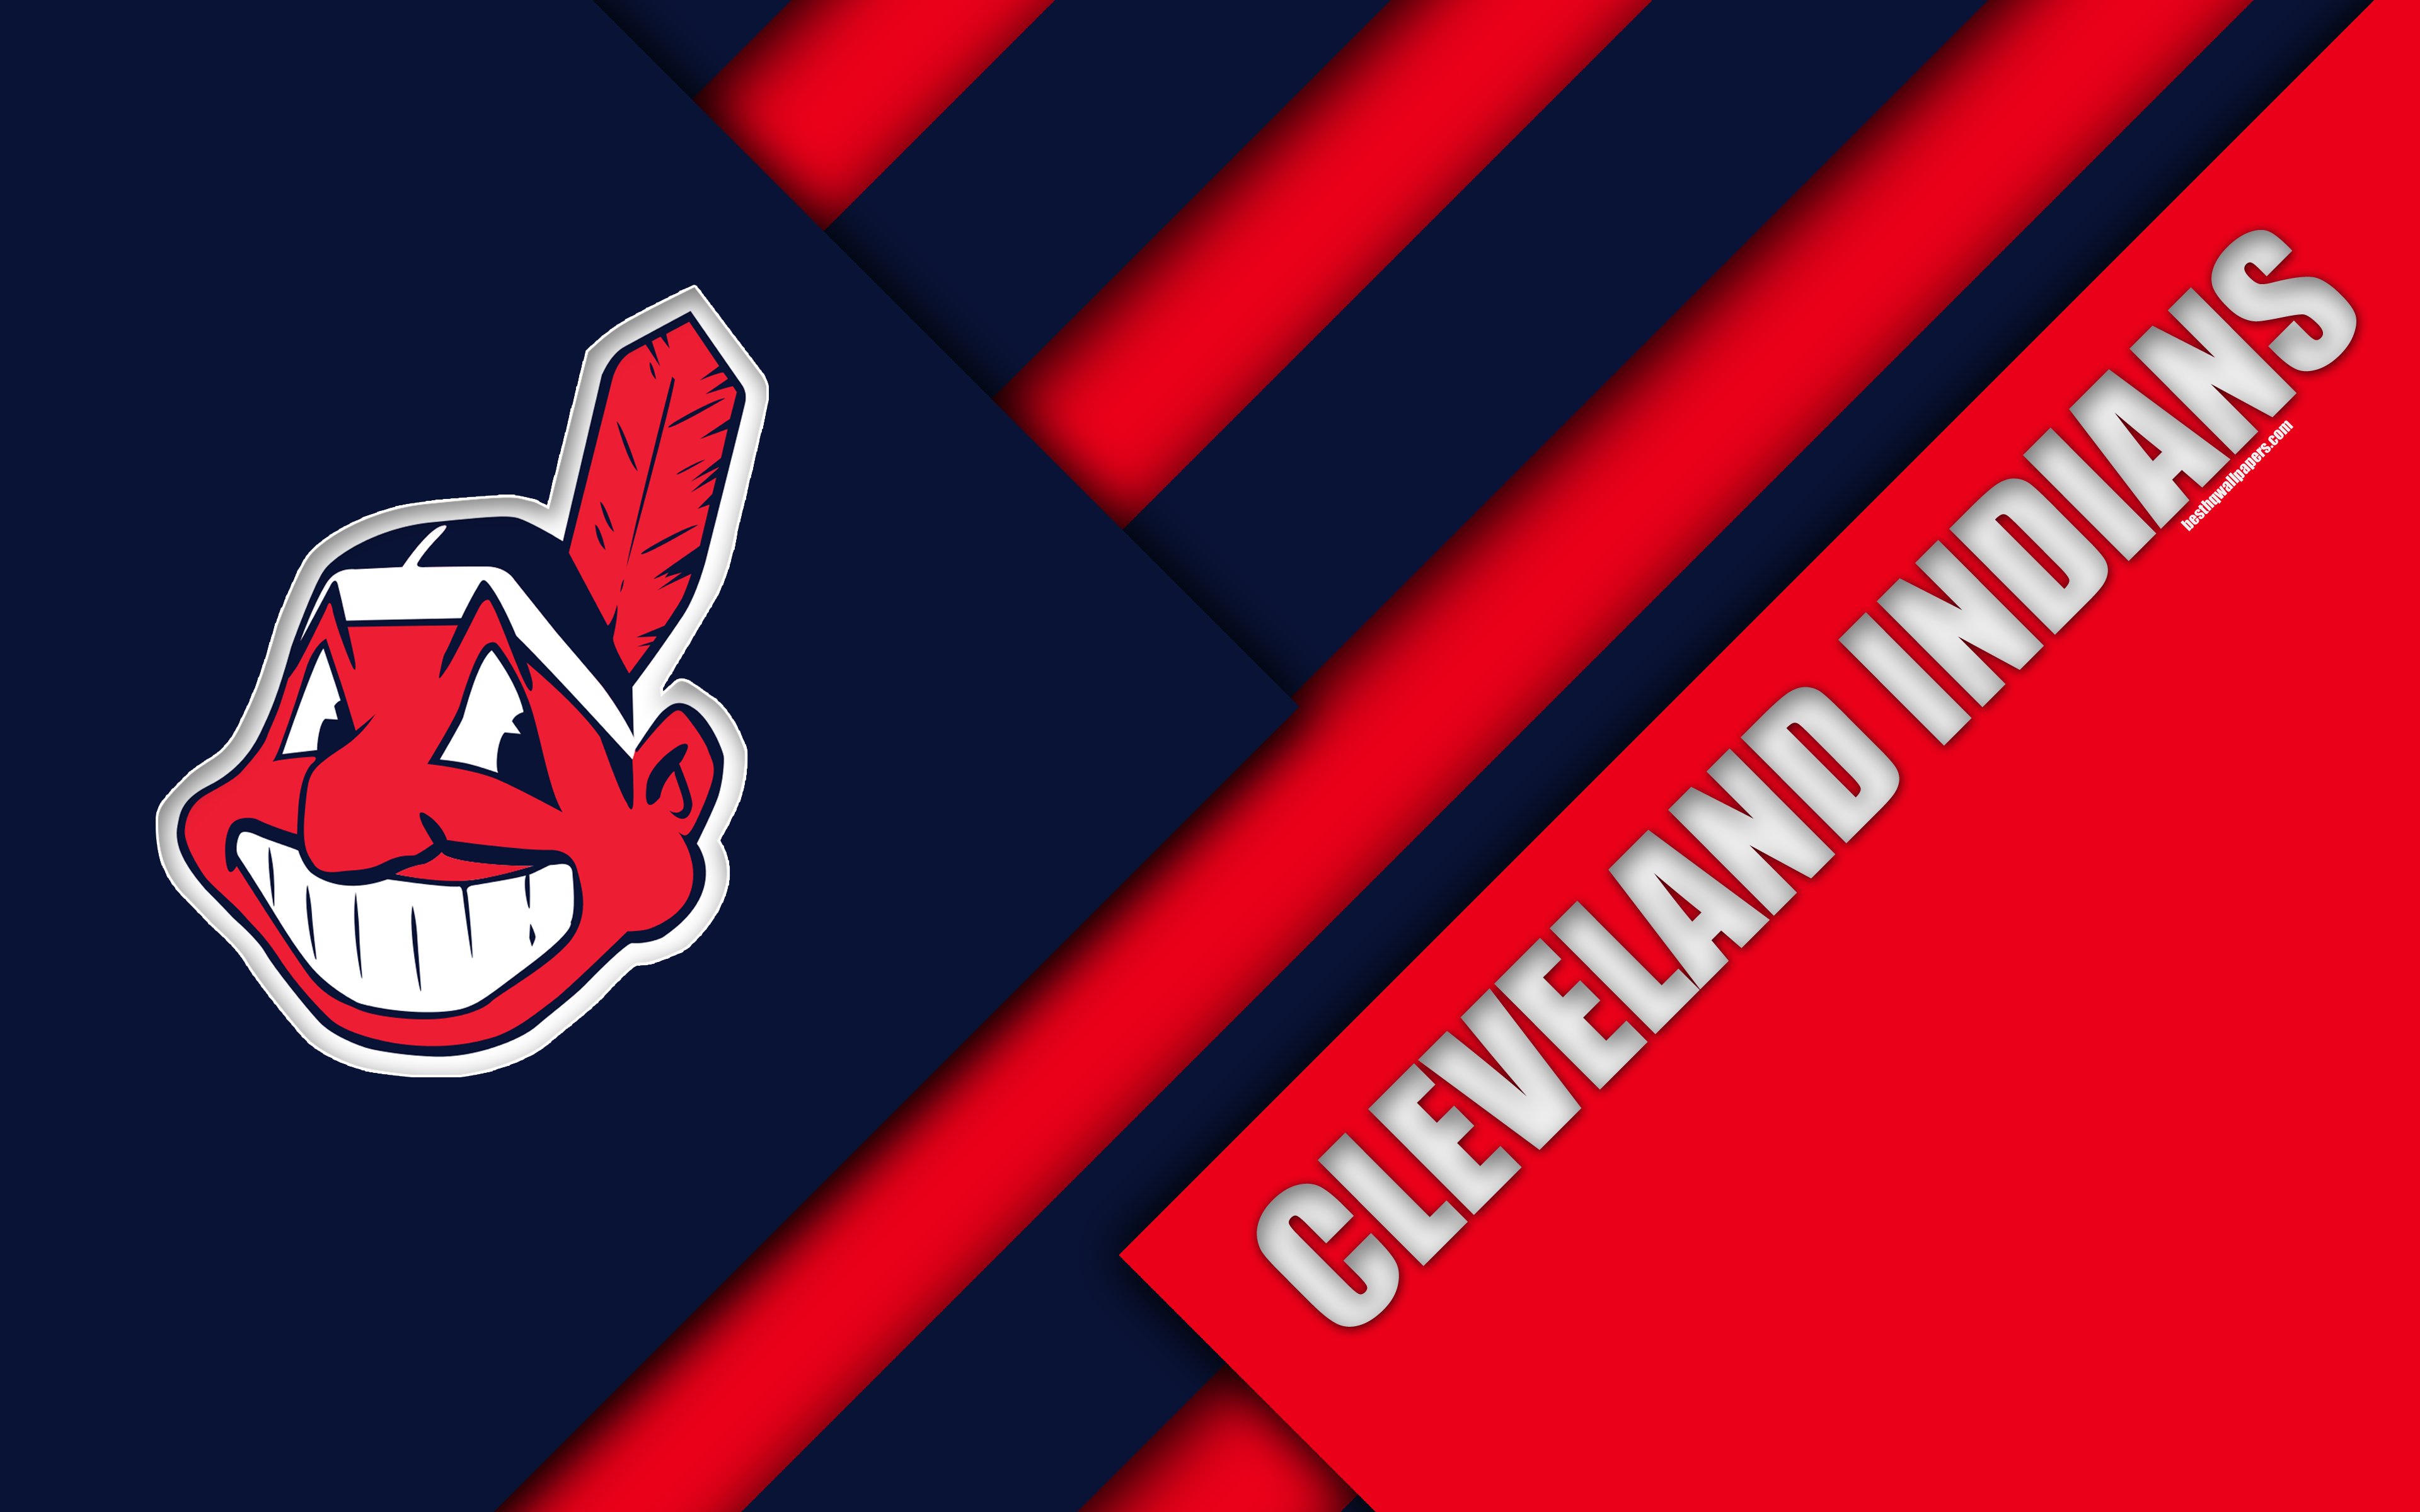 Download wallpaper Cleveland Indians, MLB, 4K, blue pink